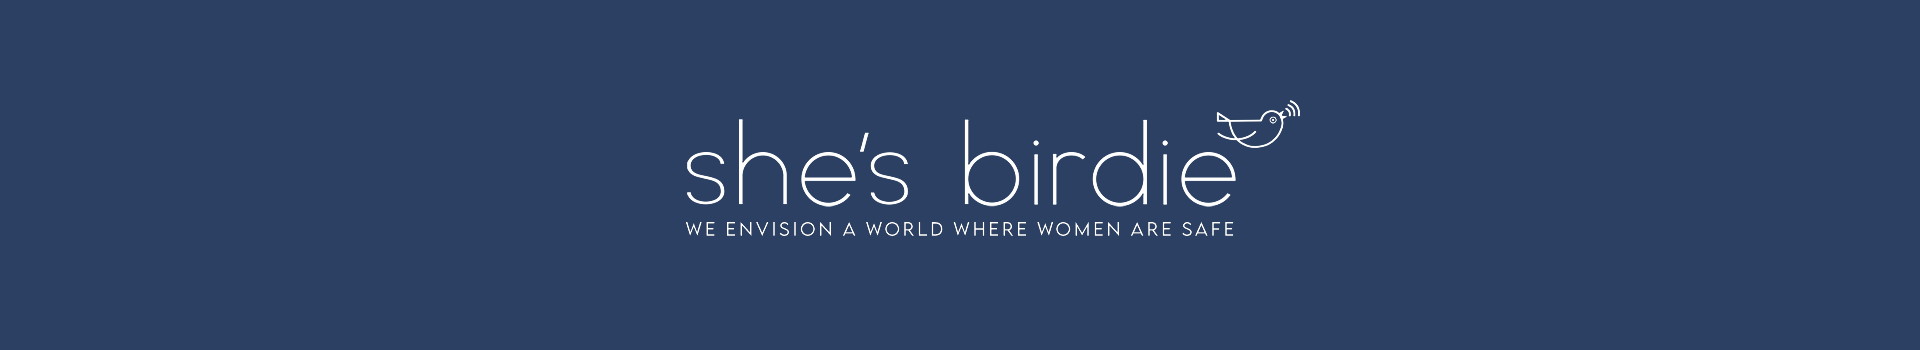 birdie-banner